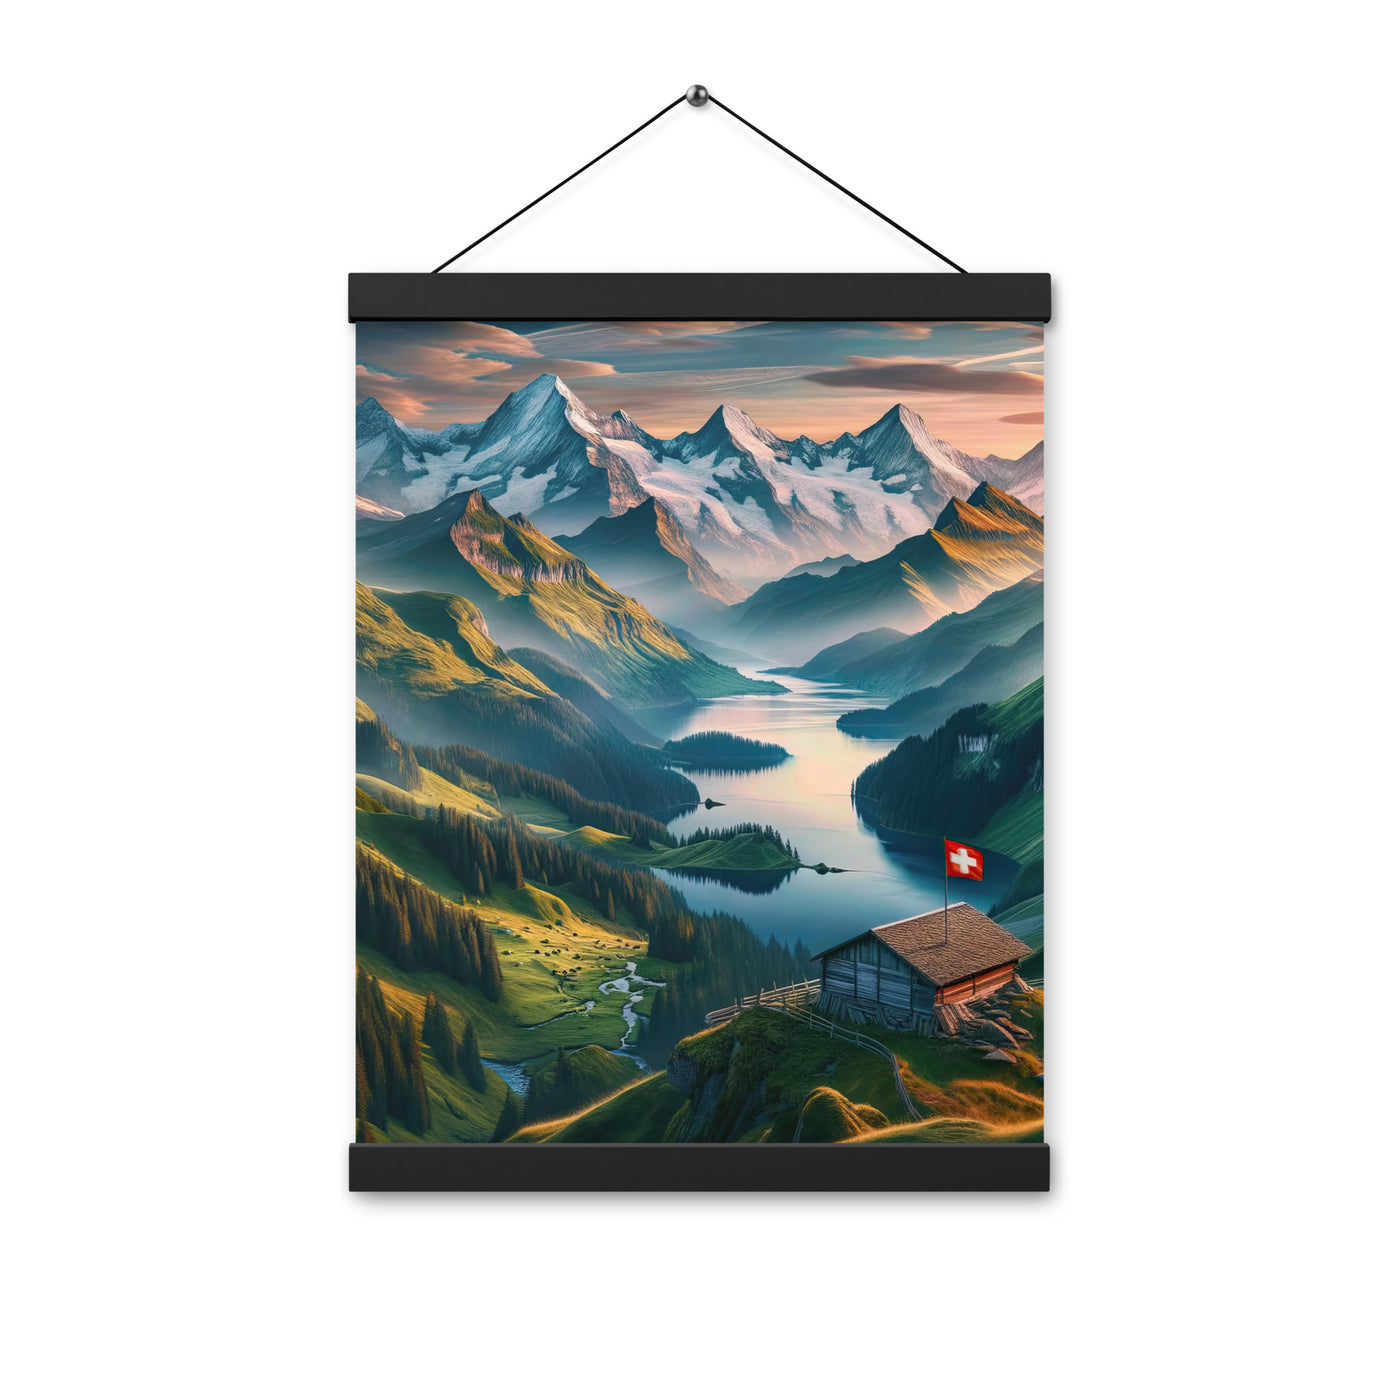 Schweizer Flagge, Alpenidylle: Dämmerlicht, epische Berge und stille Gewässer - Premium Poster mit Aufhängung berge xxx yyy zzz 30.5 x 40.6 cm